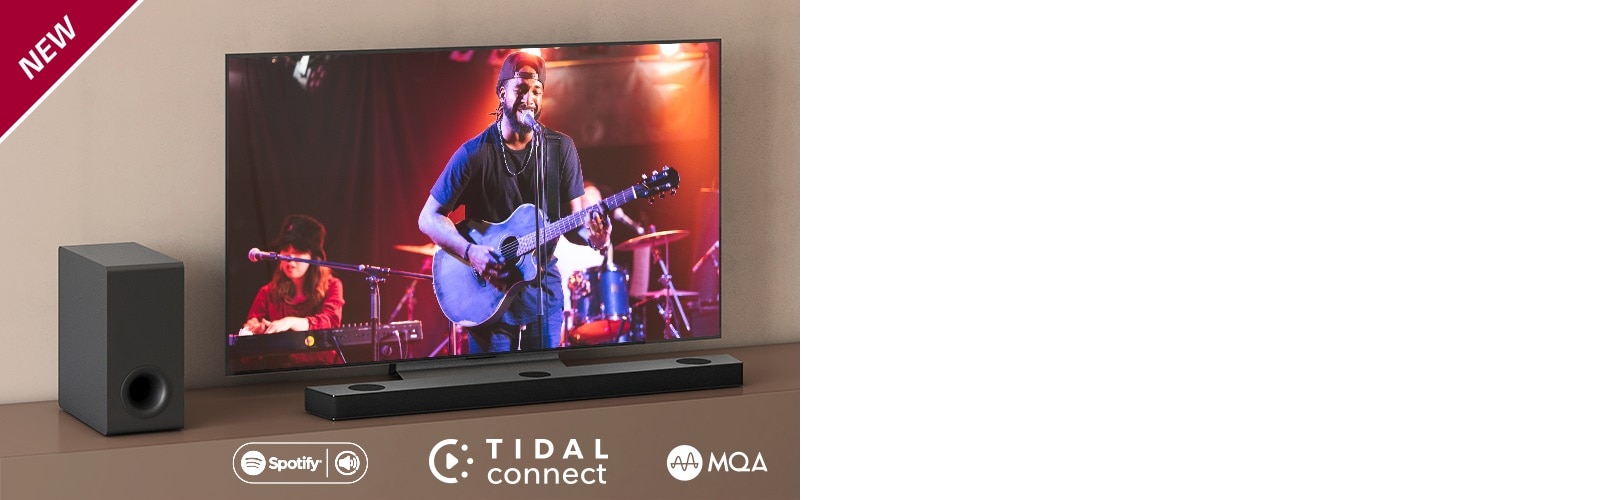 Der er placeret et LG TV på den brune hylde og en LG Sound Bar S75QR foran TV'et. Der er placeret en subwoofer på venstre side af TV’et. TV’et viser en koncertscene. NYT-mærke vises i øverste venstre hjørne.